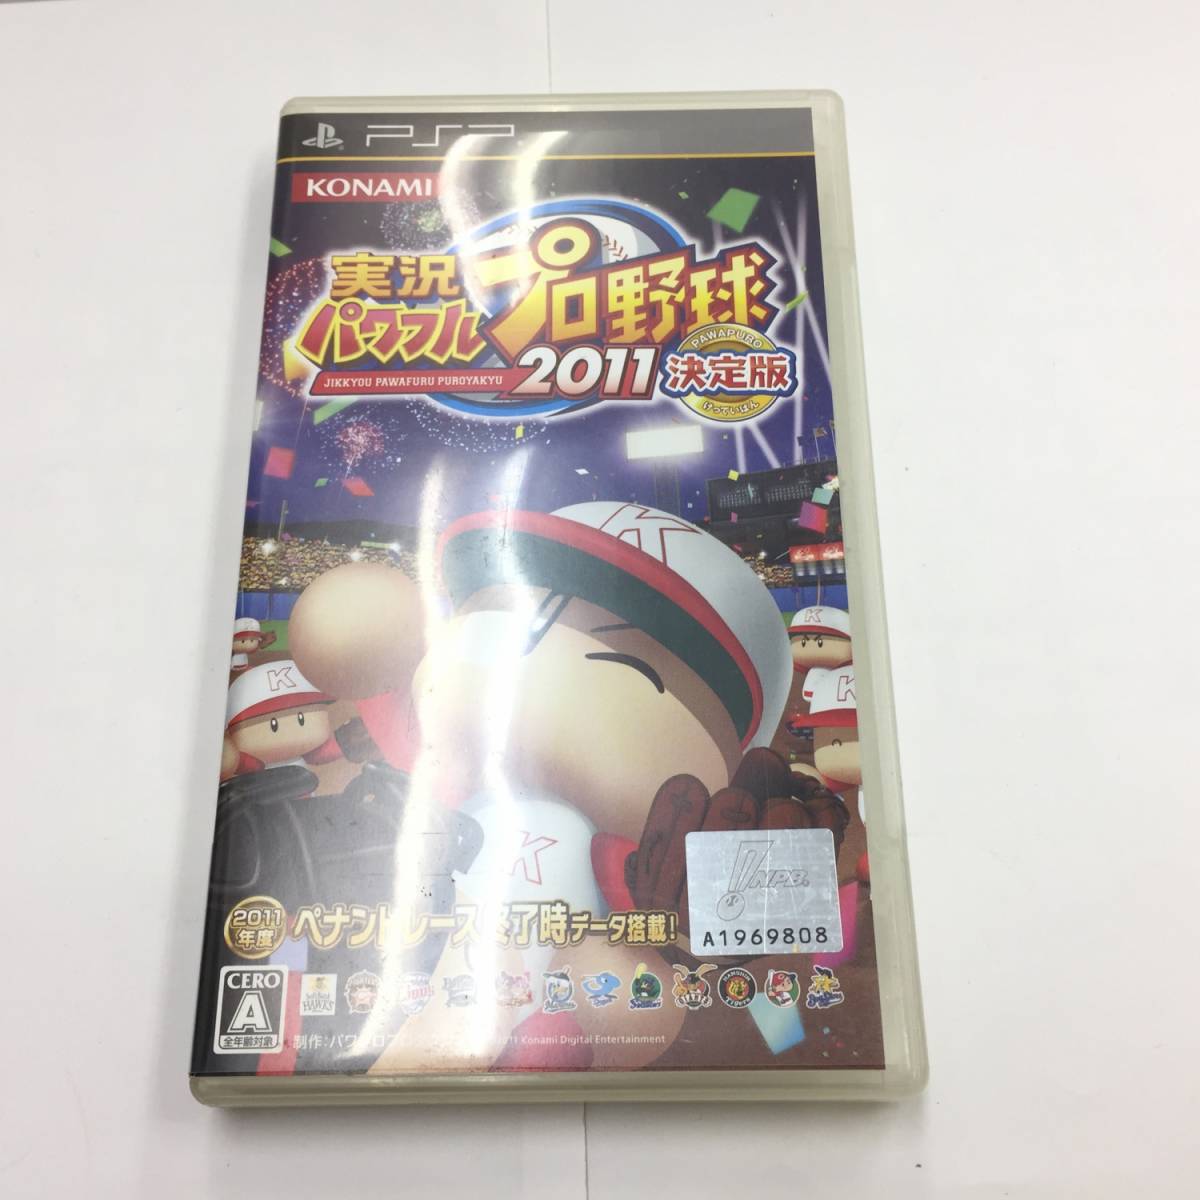 『ソフト』PSP『実況パワフルプロ野球 2011 決定版』konami:コナミ プレイステーションポータブル_画像1